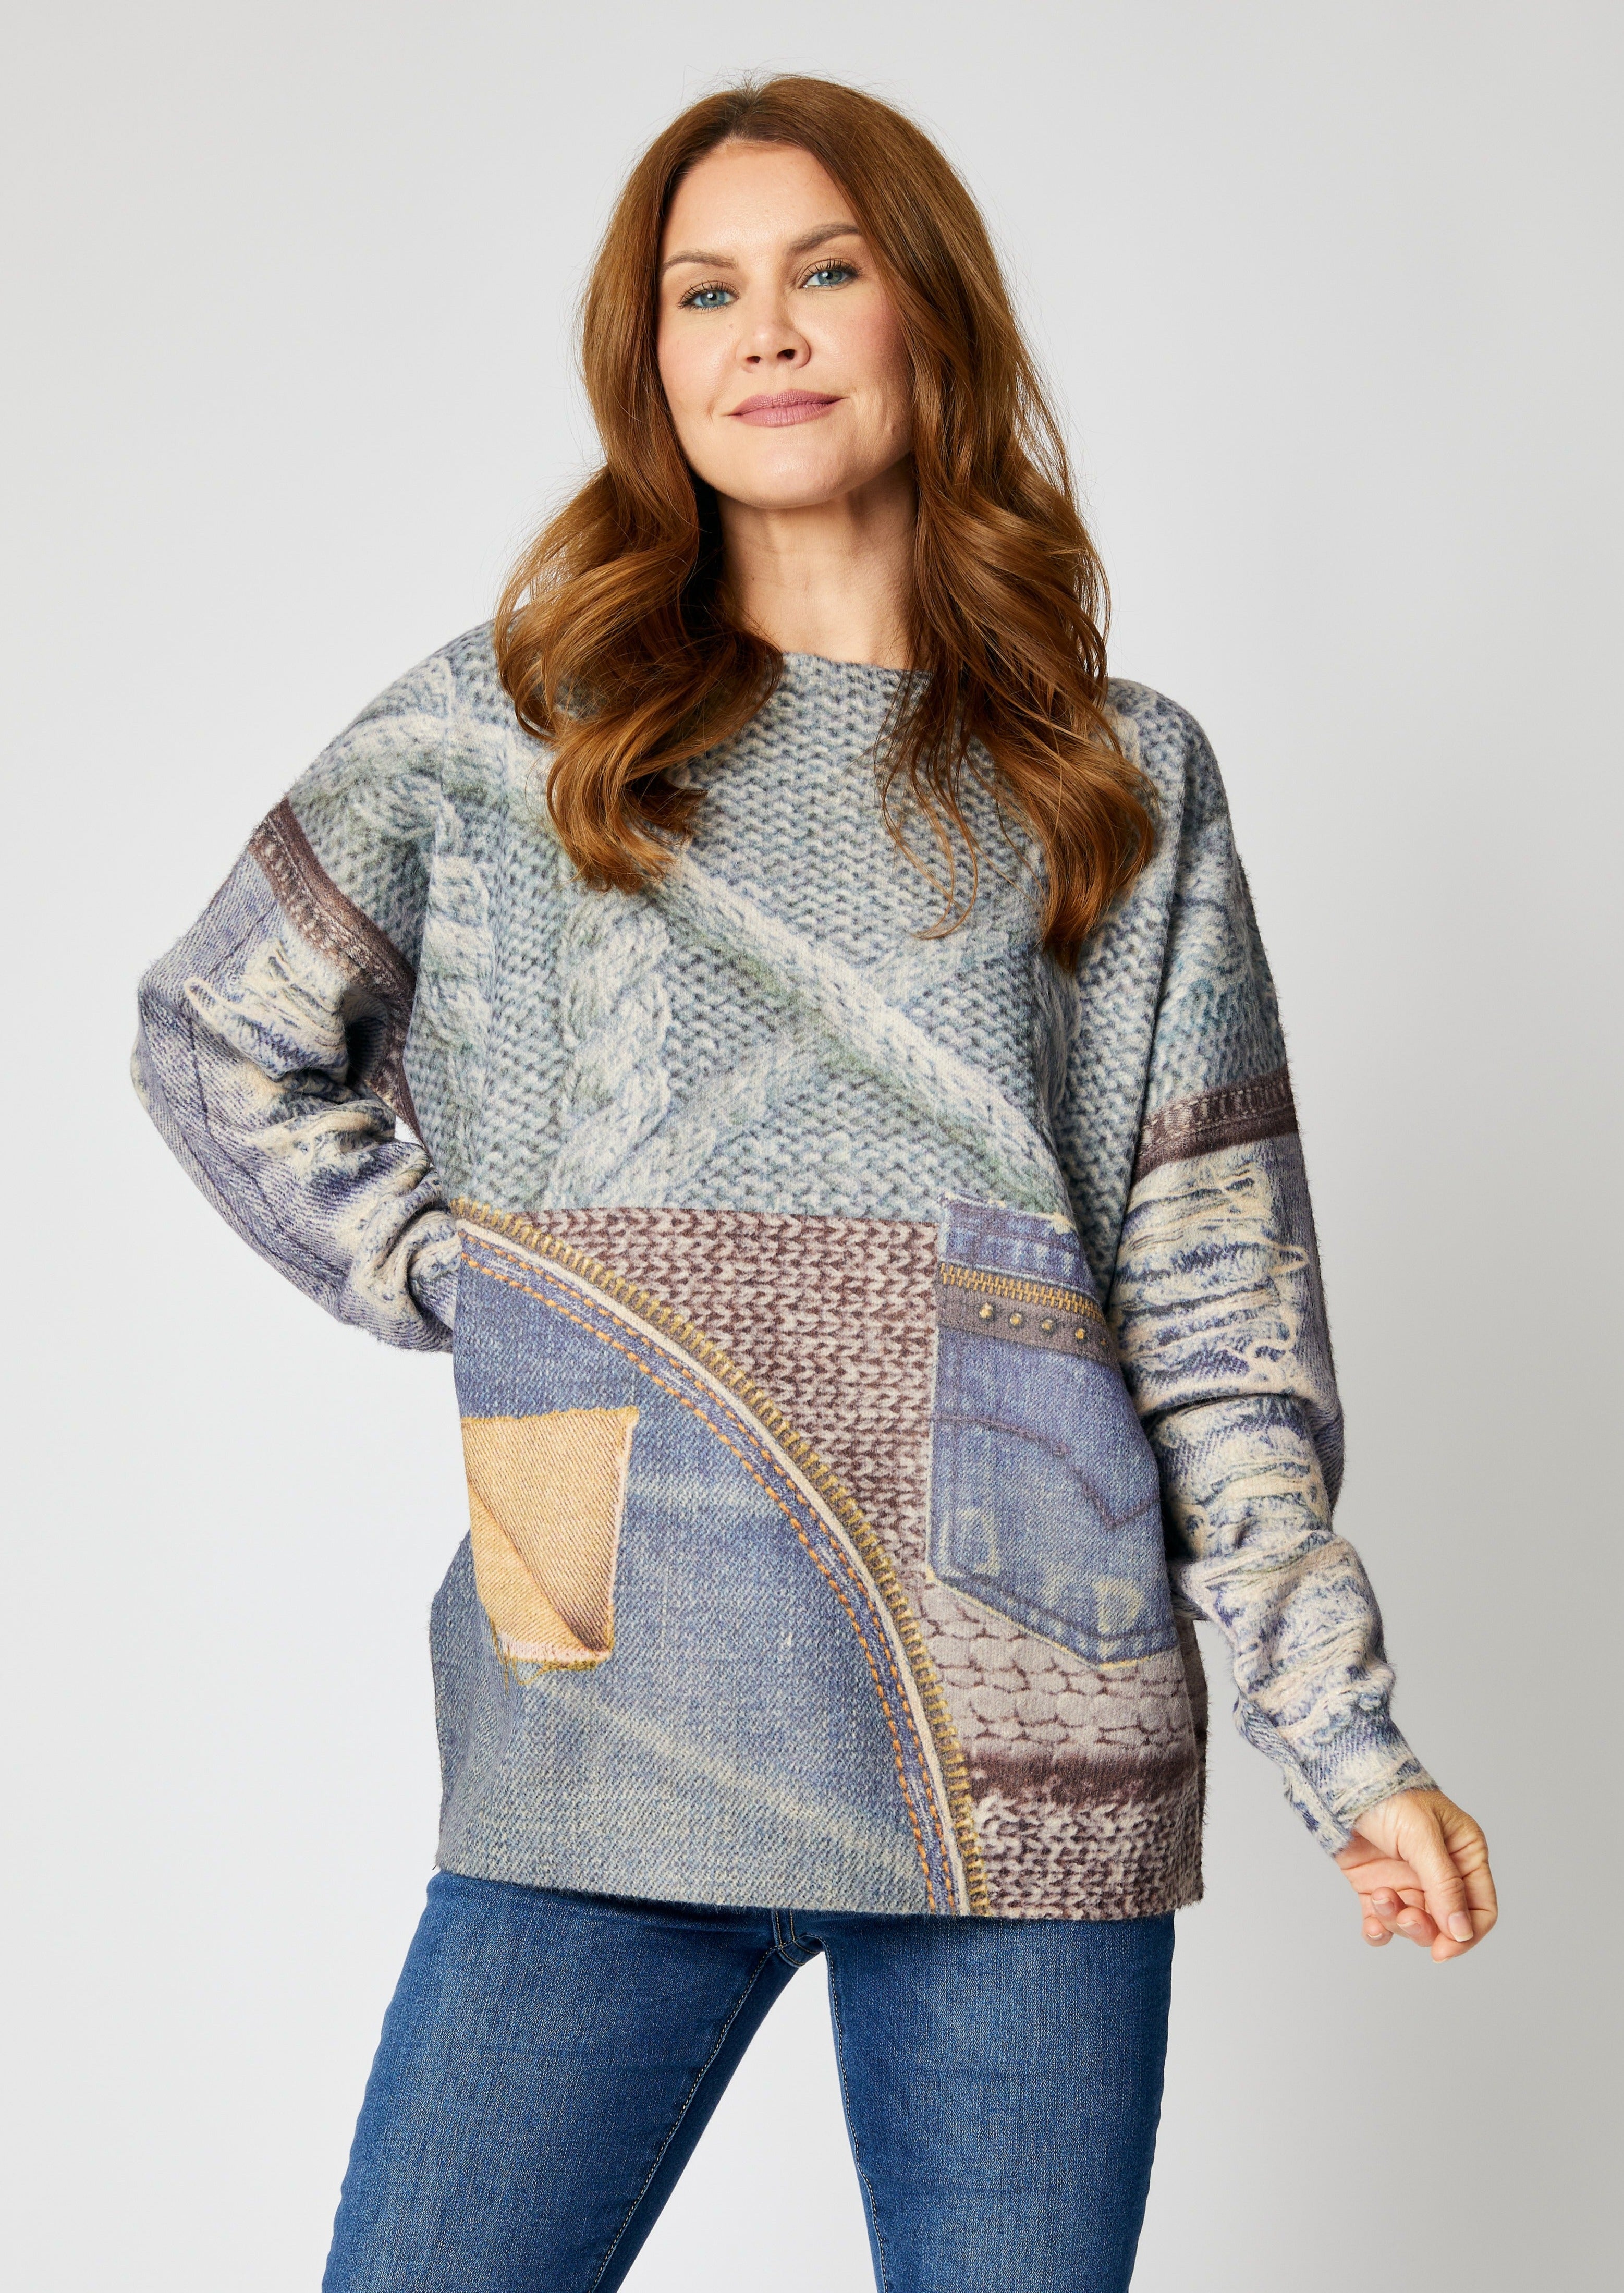 Fun Pattern Sweaters